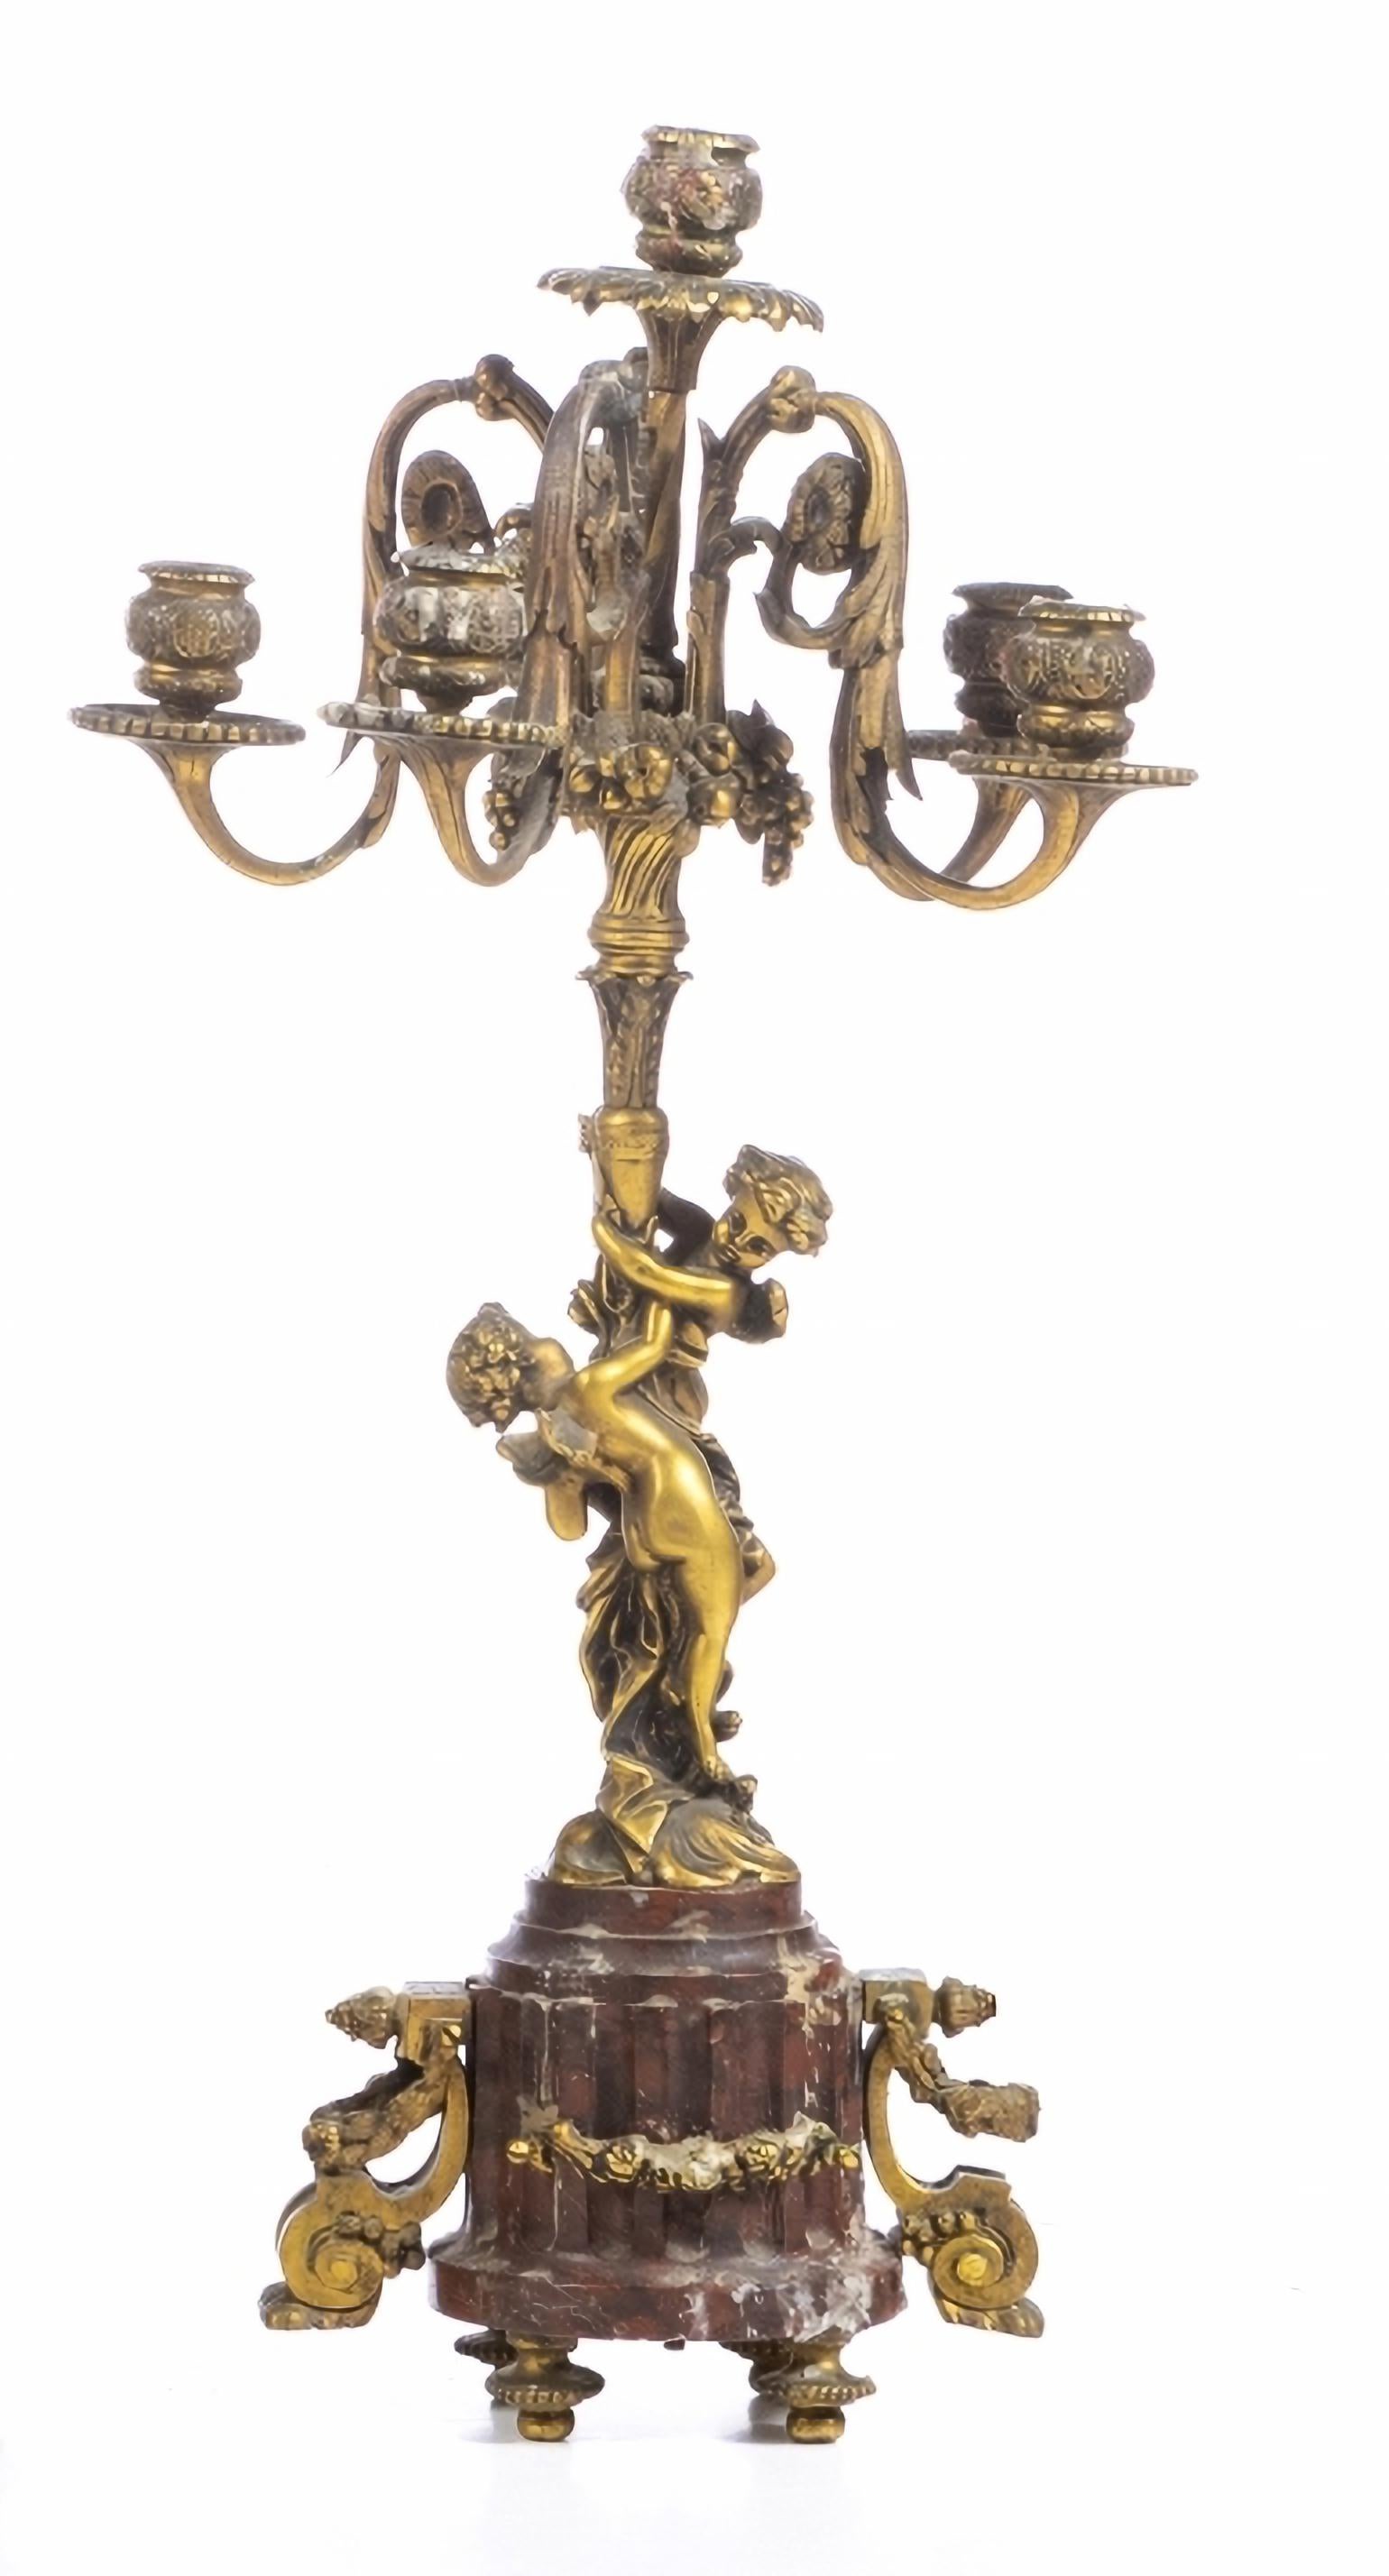 Saisie-arrêt

Français, fin du XIXe siècle
en bronze doré et en marbre rouge,
composé de : horloge et deux candélabres à cinq lumières.
Montre avec cadran émaillé avec chiffres arabes.
Machine à horloge portant l'inscription 